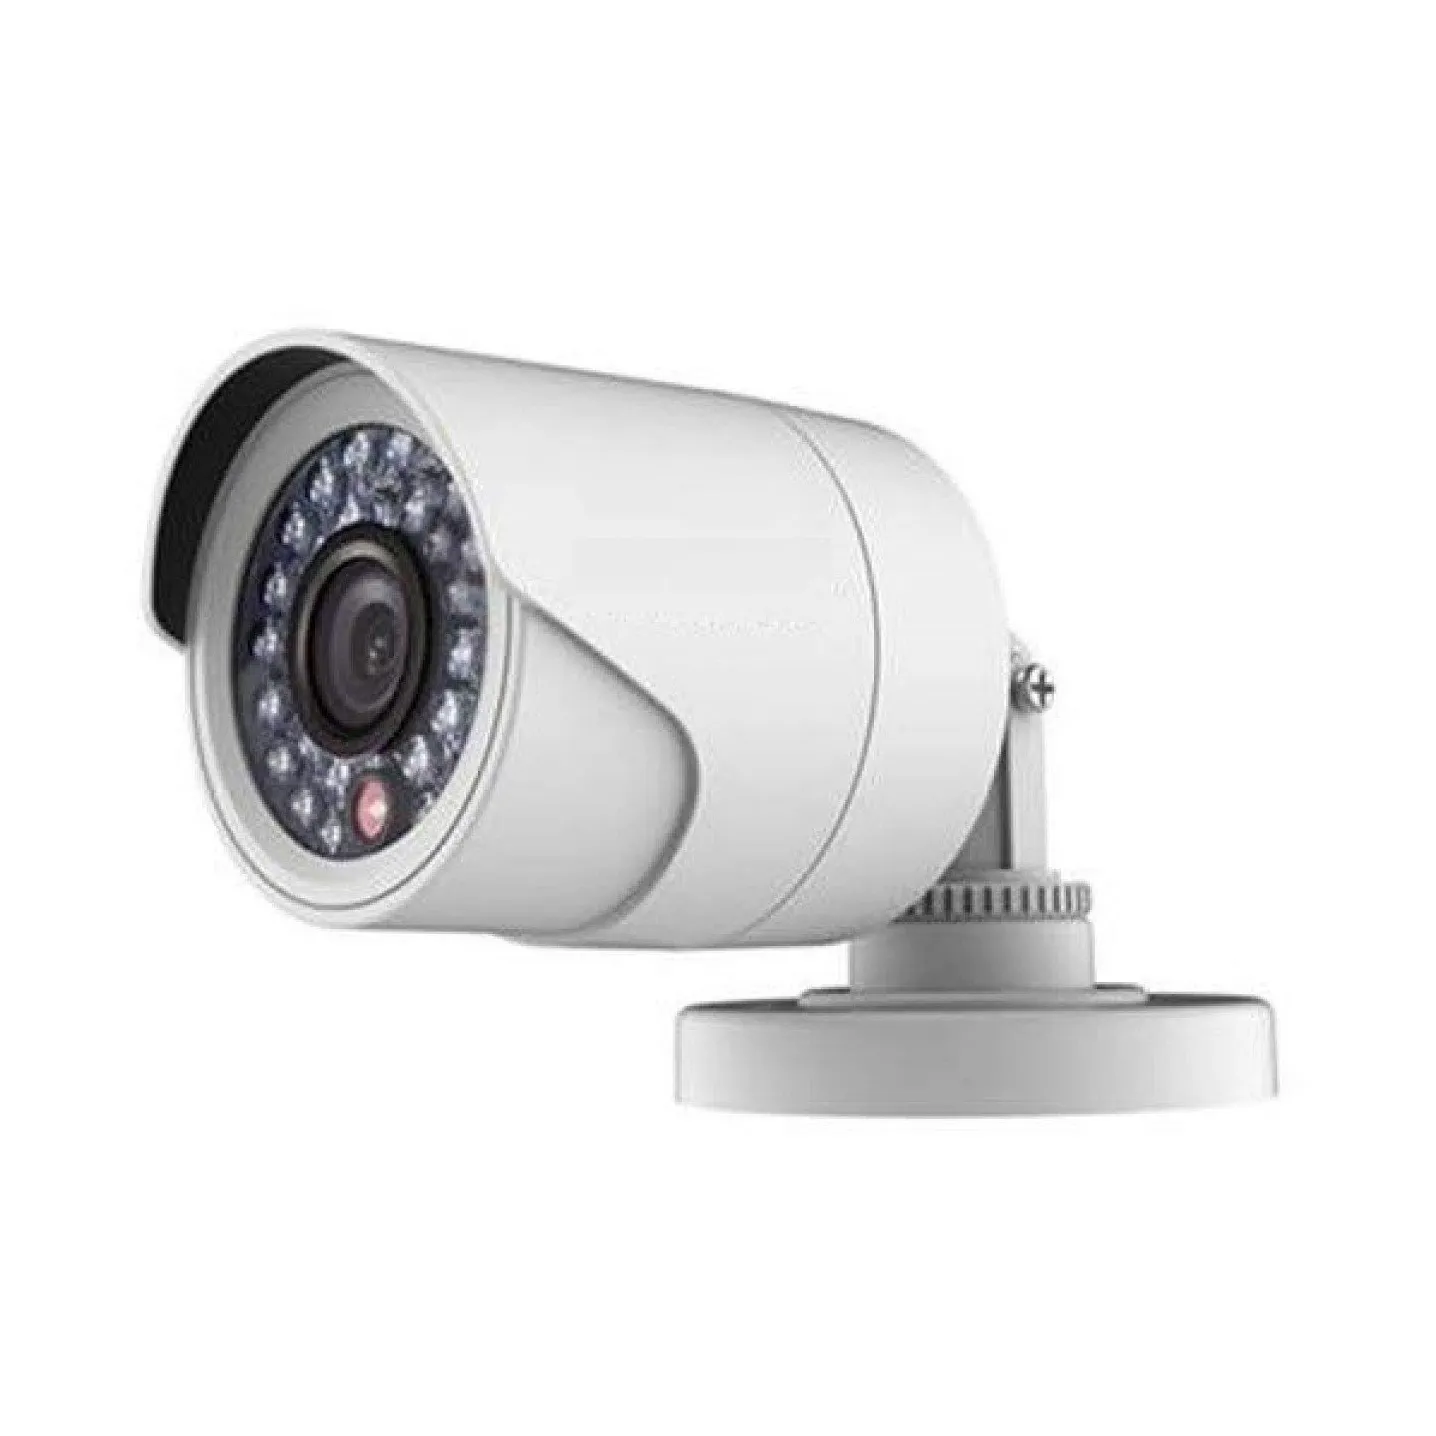 Otopark güvenlik için taşınabilir kule CCTV dijital kamera mobil güneş gözetim römork